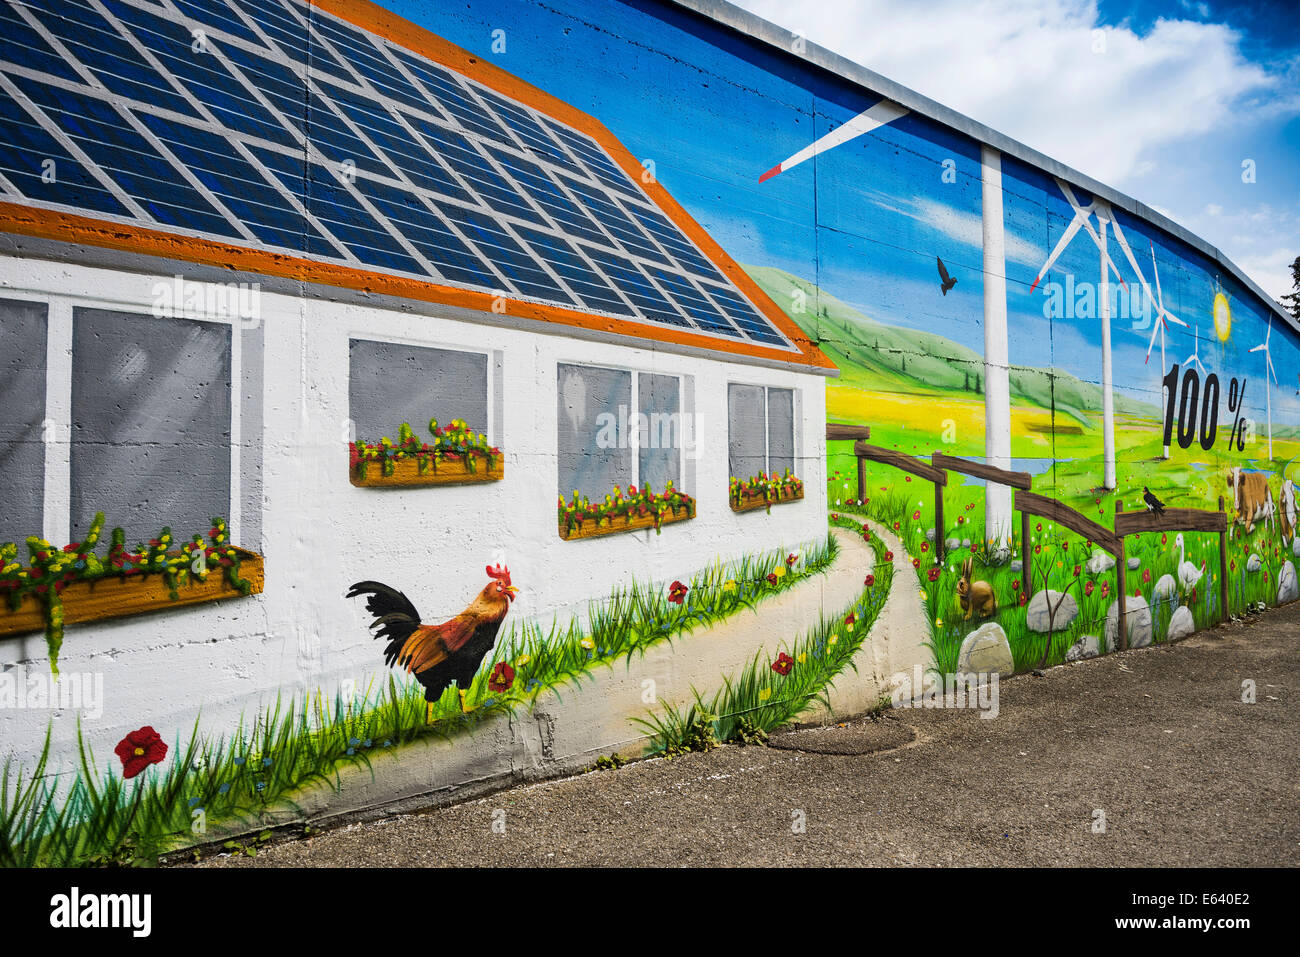 Mur d'une maison peinte avec un thème de l'énergie renouvelable, Tiengen, Vellberg, Bade-Wurtemberg, Allemagne Banque D'Images